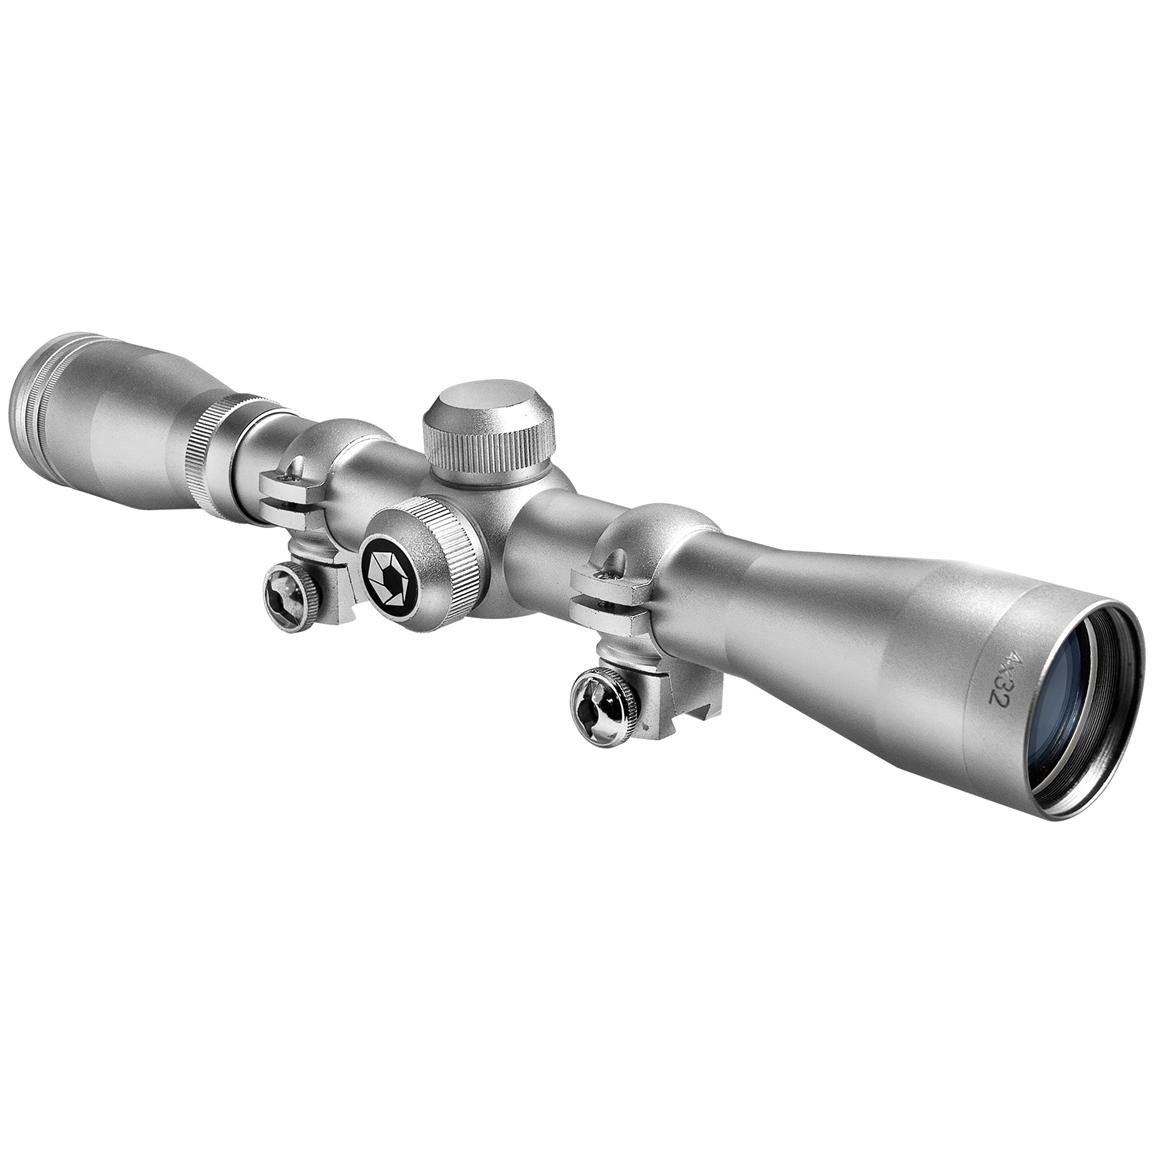 Barska® 4x32 mm Plinker-22 Riflescope with Rings